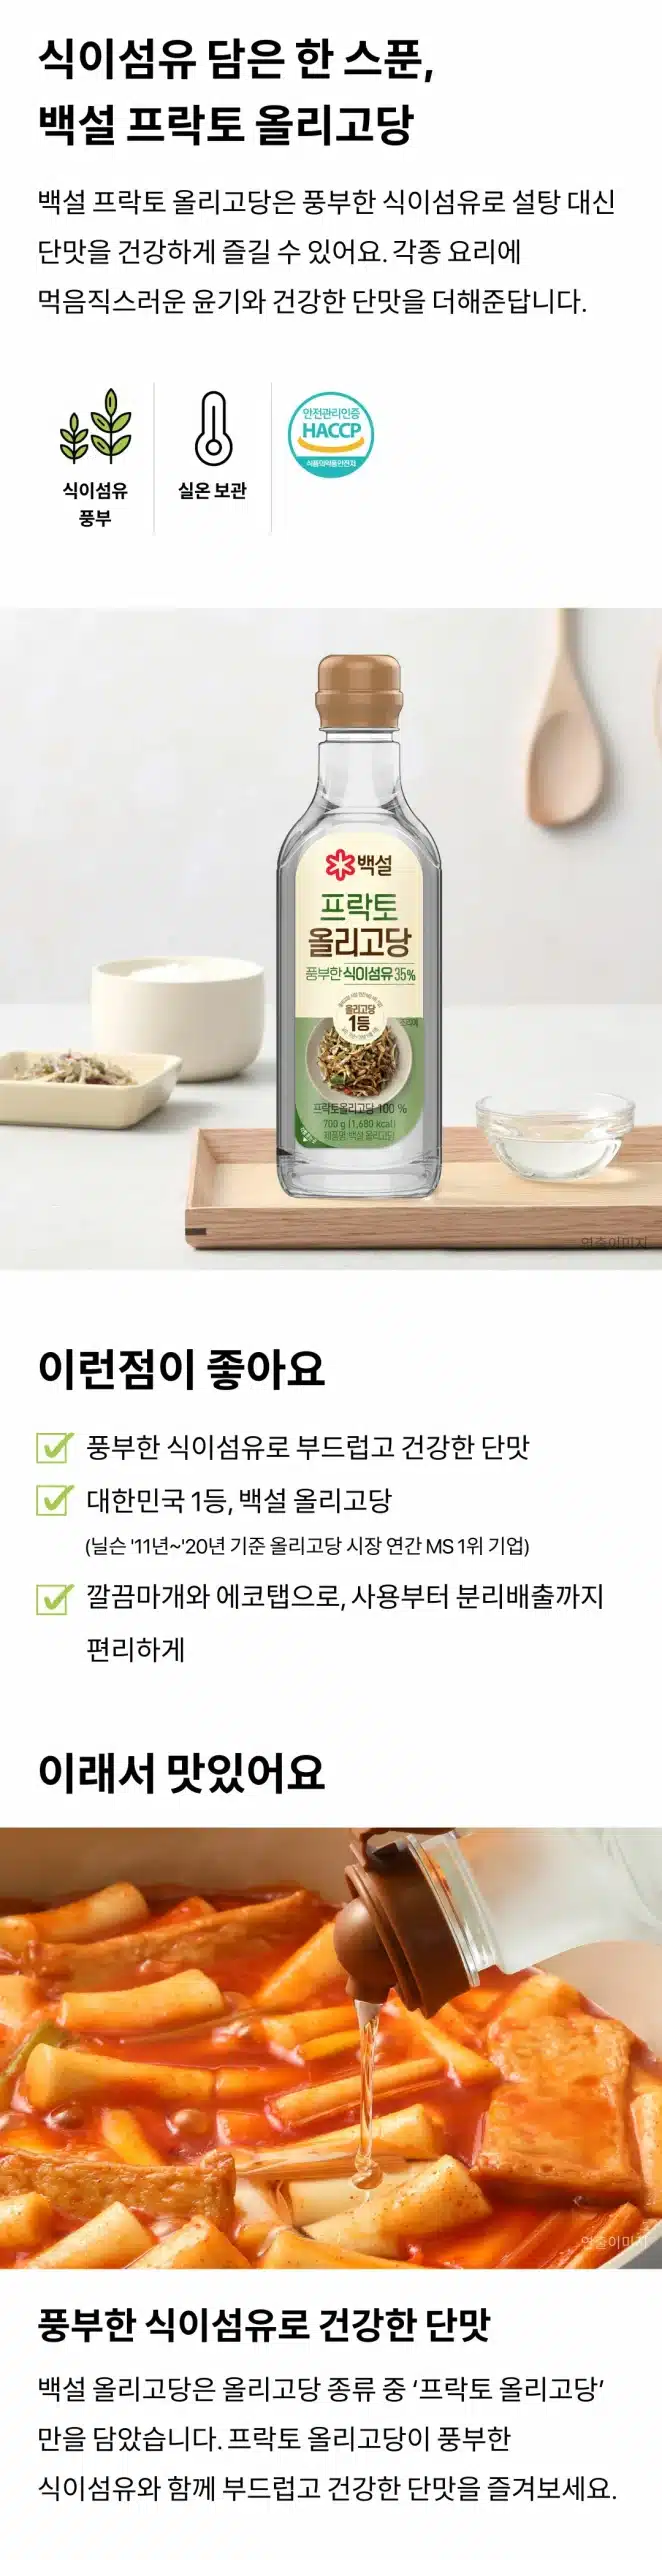 韓國食品-[CJ] 백설 프락토 올리고당 700g